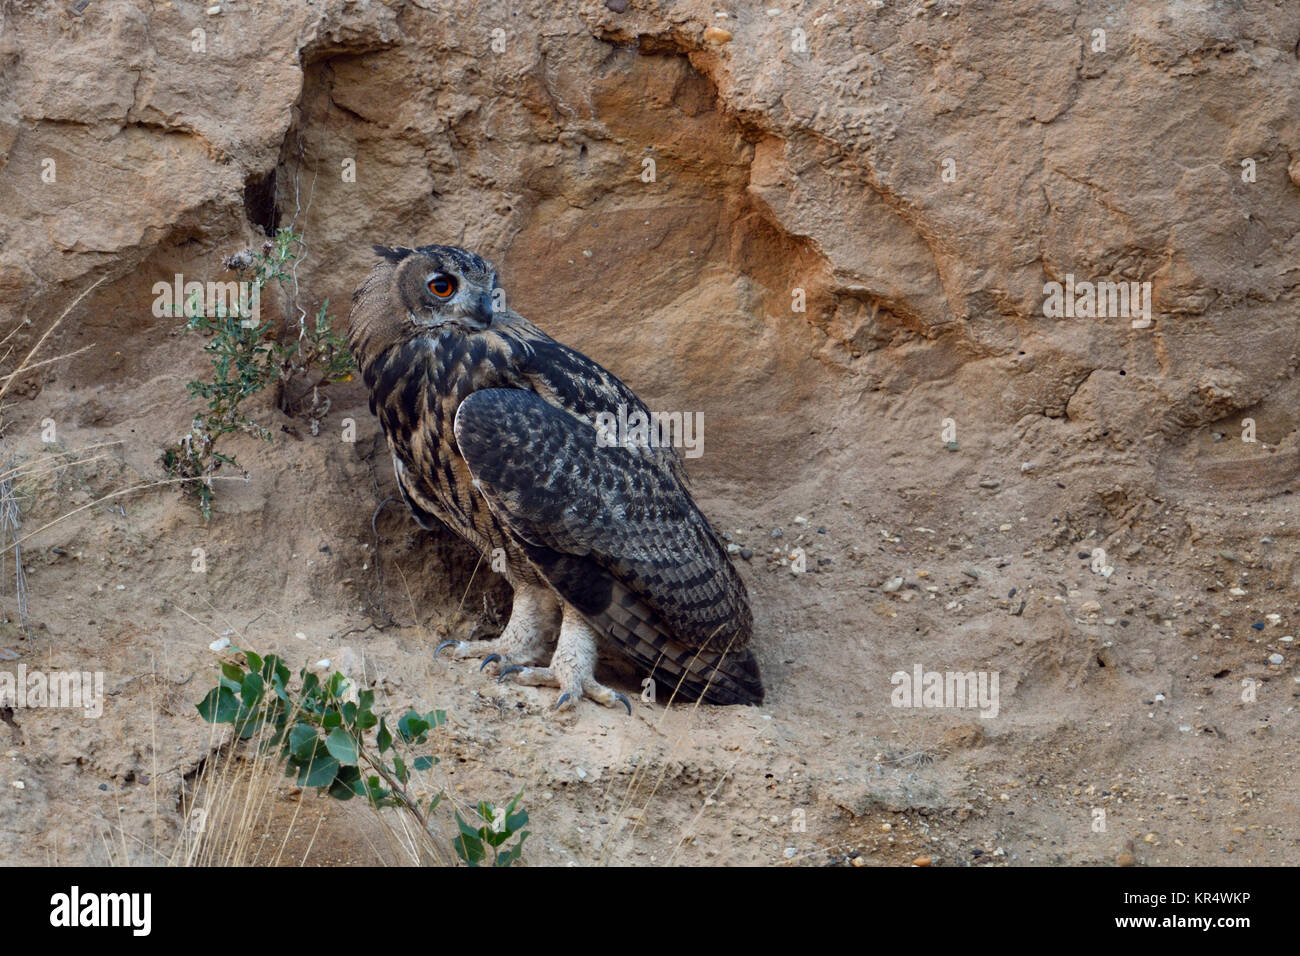 Grand Duc ( Bubo bubo ), jeune oiseau, se tient sur une falaise rocheuse dans une carrière de sable, regardant en arrière, les jambes solides, des serres, de la faune, de l'Europe. Banque D'Images